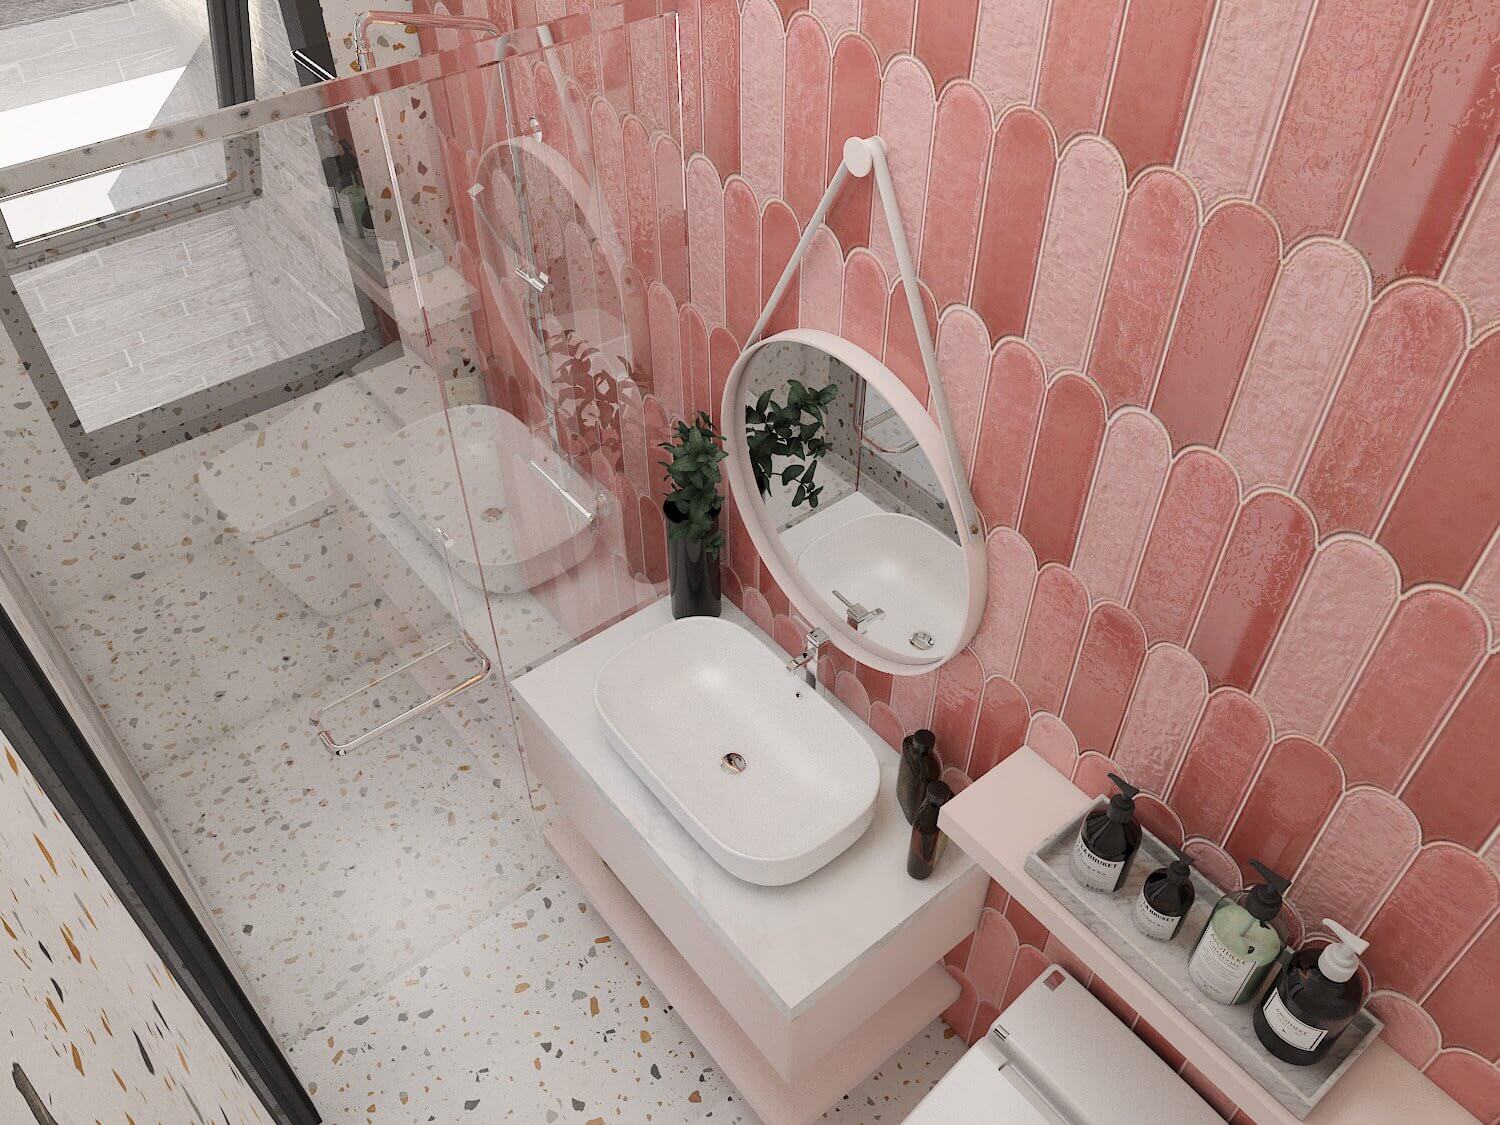 Phòng tắm, phong cách Hiện đại Modern, thiết kế concept nội thất, nhà phố Quận 4